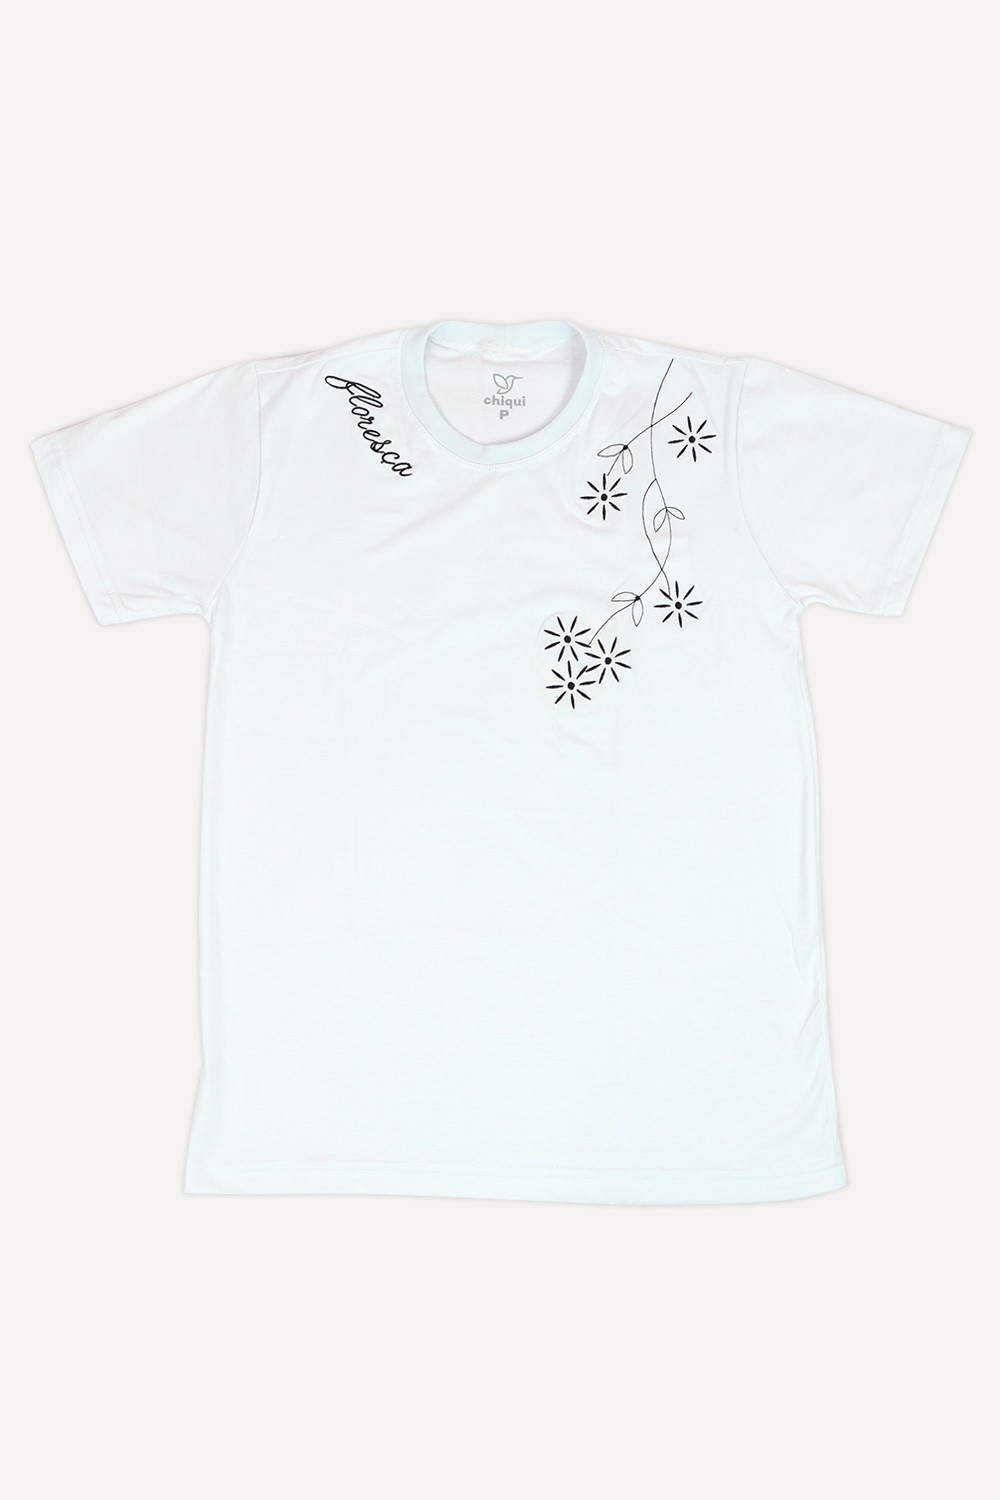 T-Shirt Chiqui Floresça Branco MD06